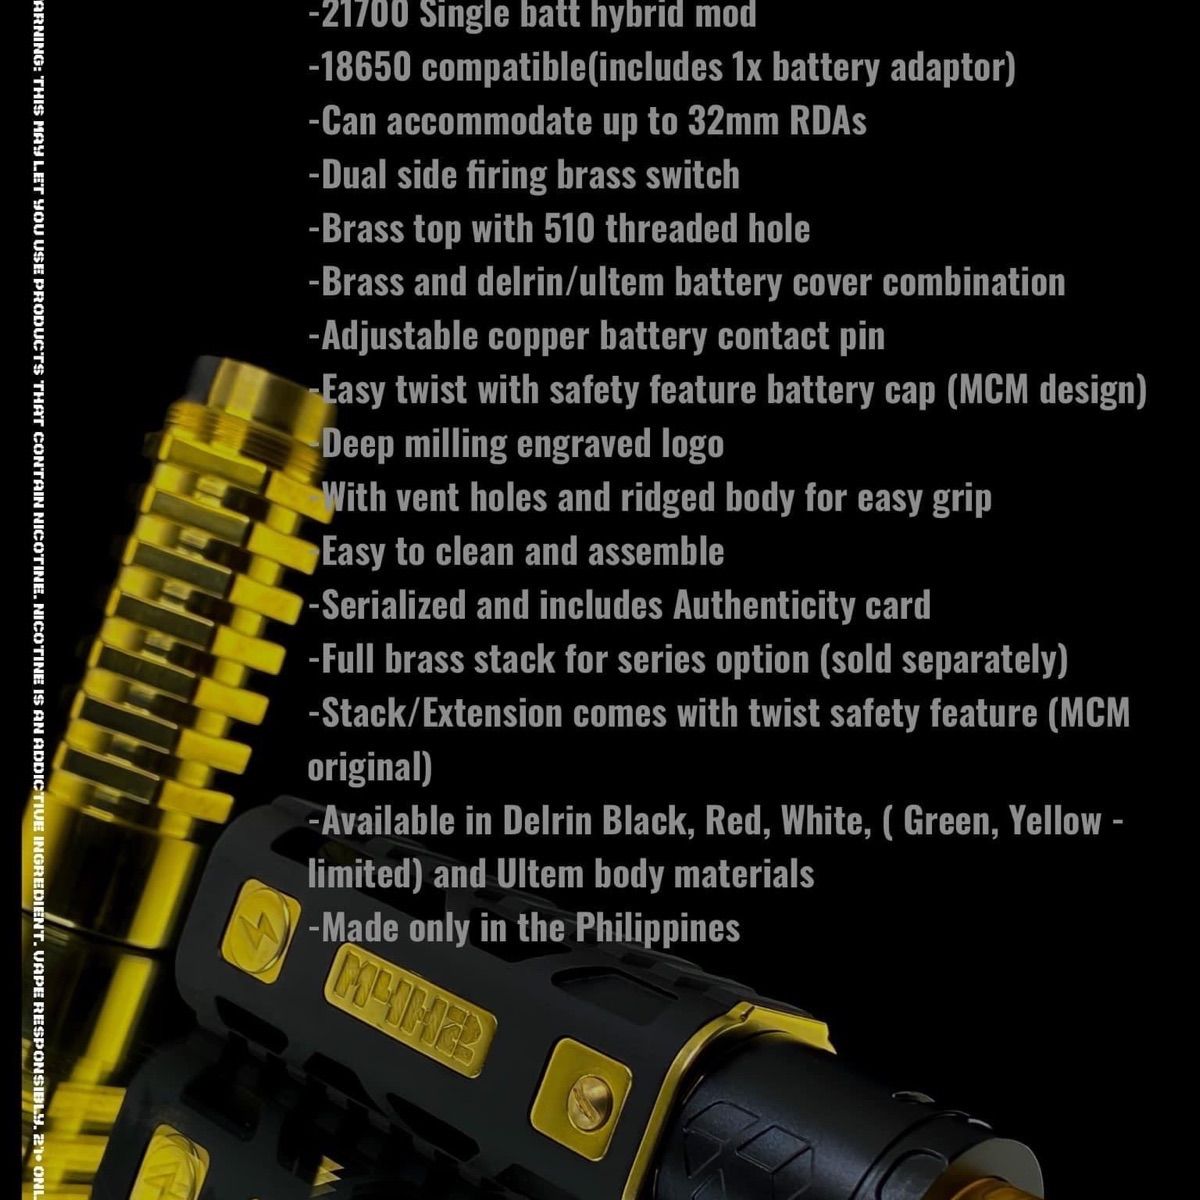 MCM MODS M4H2 MOD 21700 スタック フィリピン VAPE-